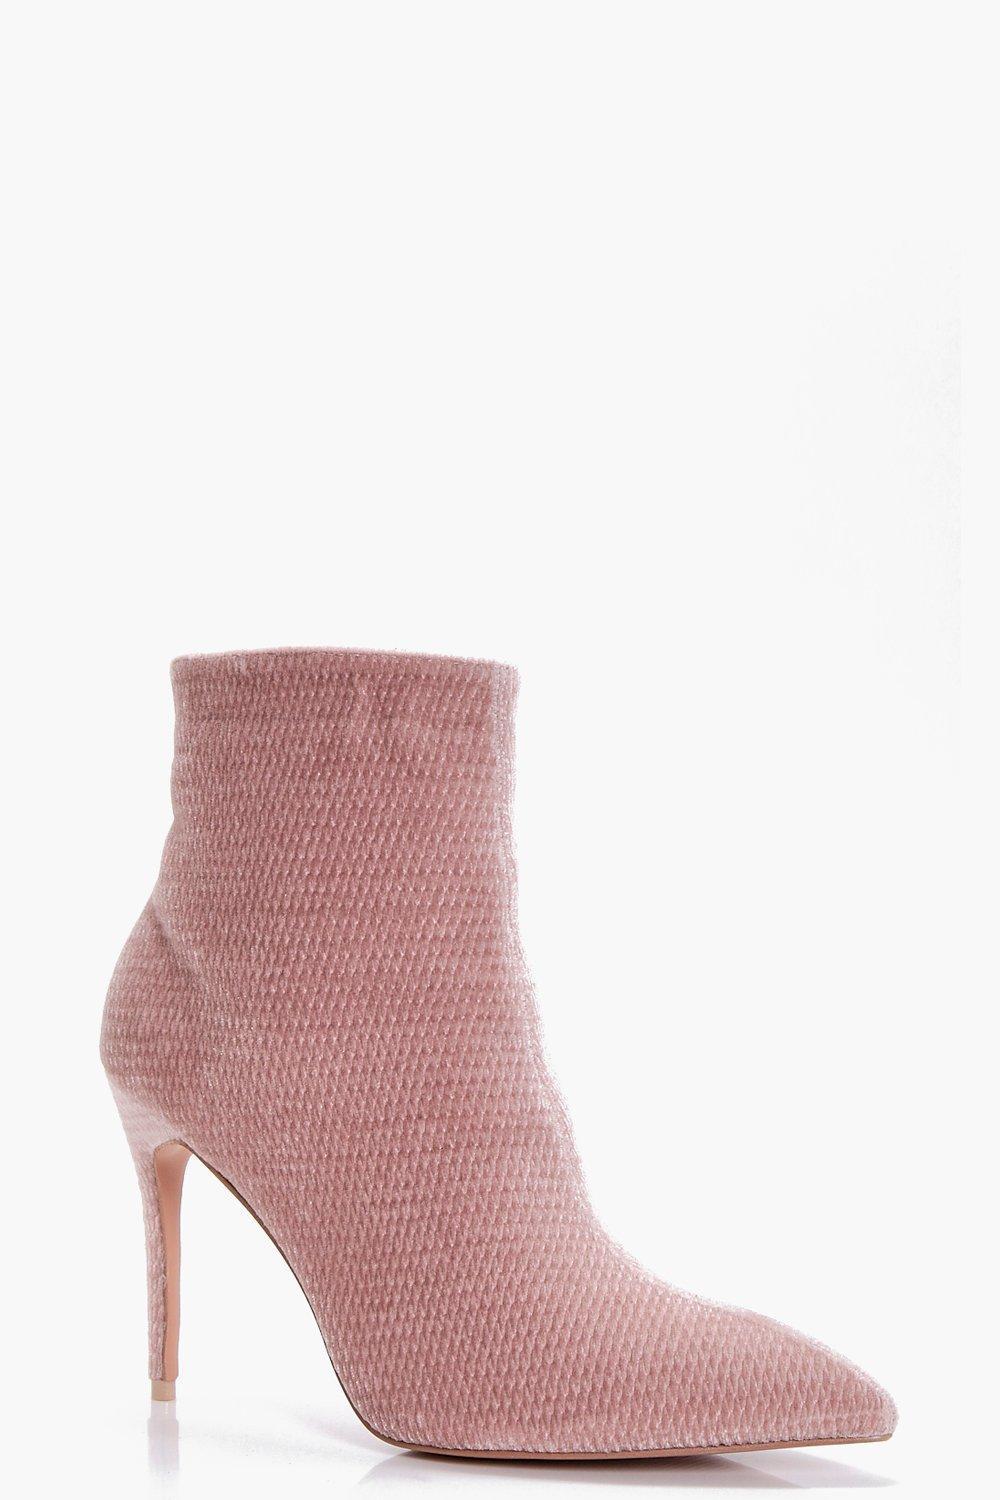 dusky pink heels